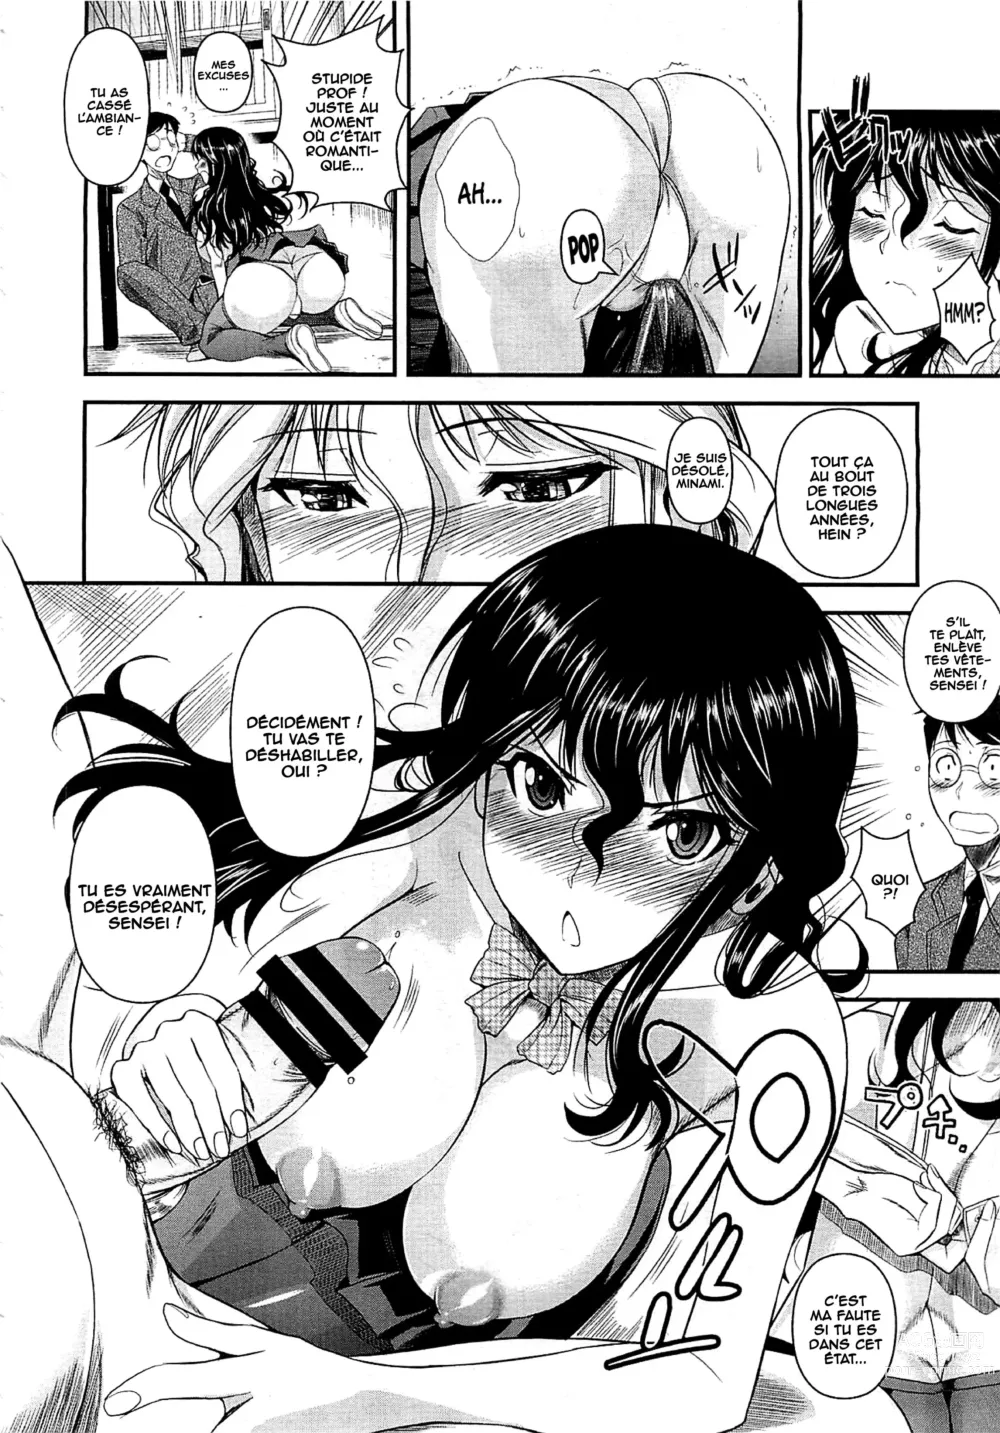 Page 8 of manga Suna Onanie